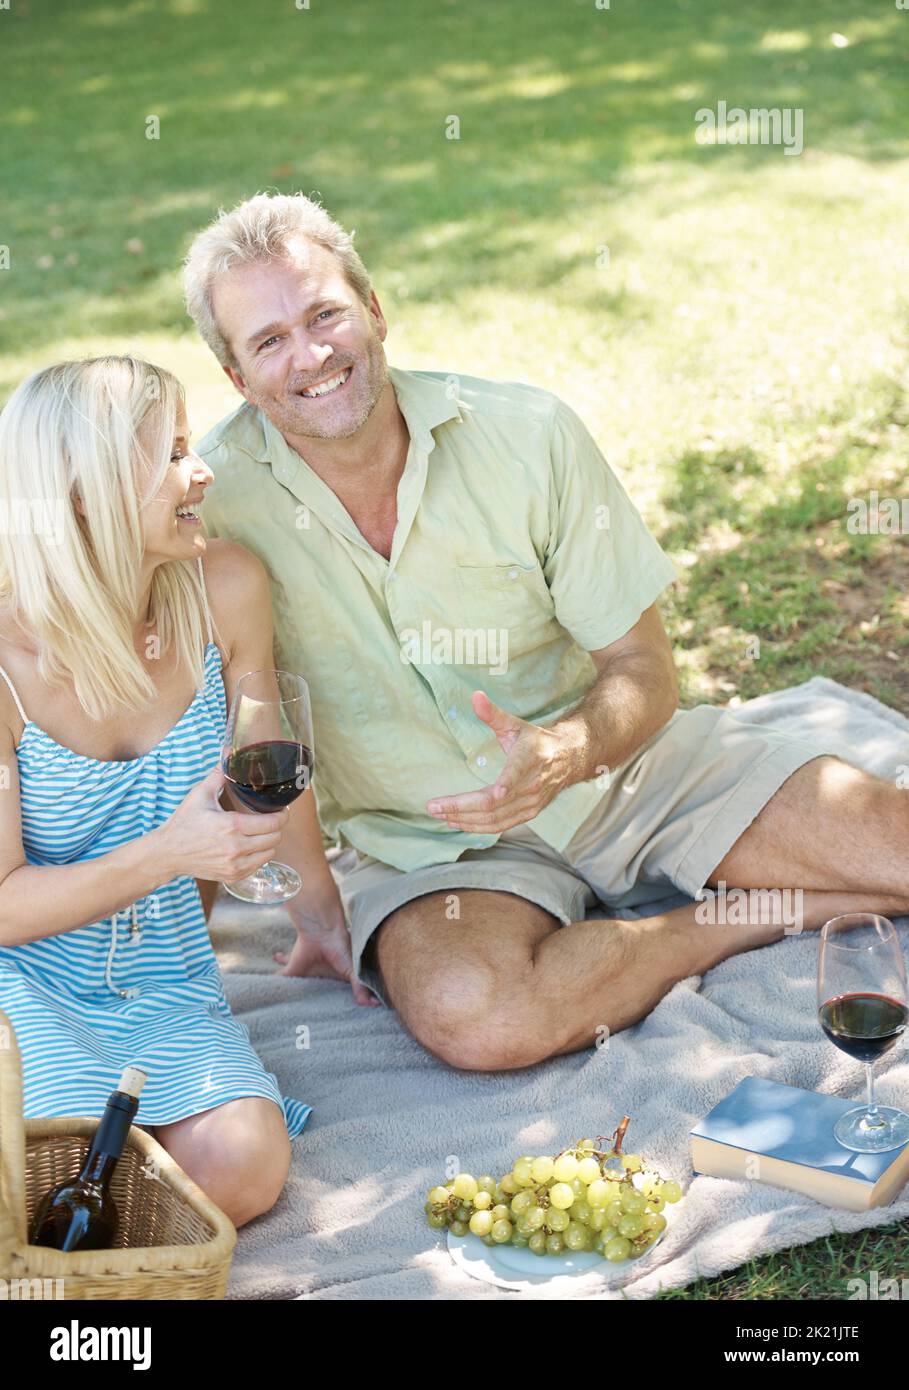 Godendo la raccolta della natura. Un marito e una moglie felici che si godono un bicchiere di vino mentre si ha un pic-nic all'aperto in un parco in una giornata estiva. Foto Stock